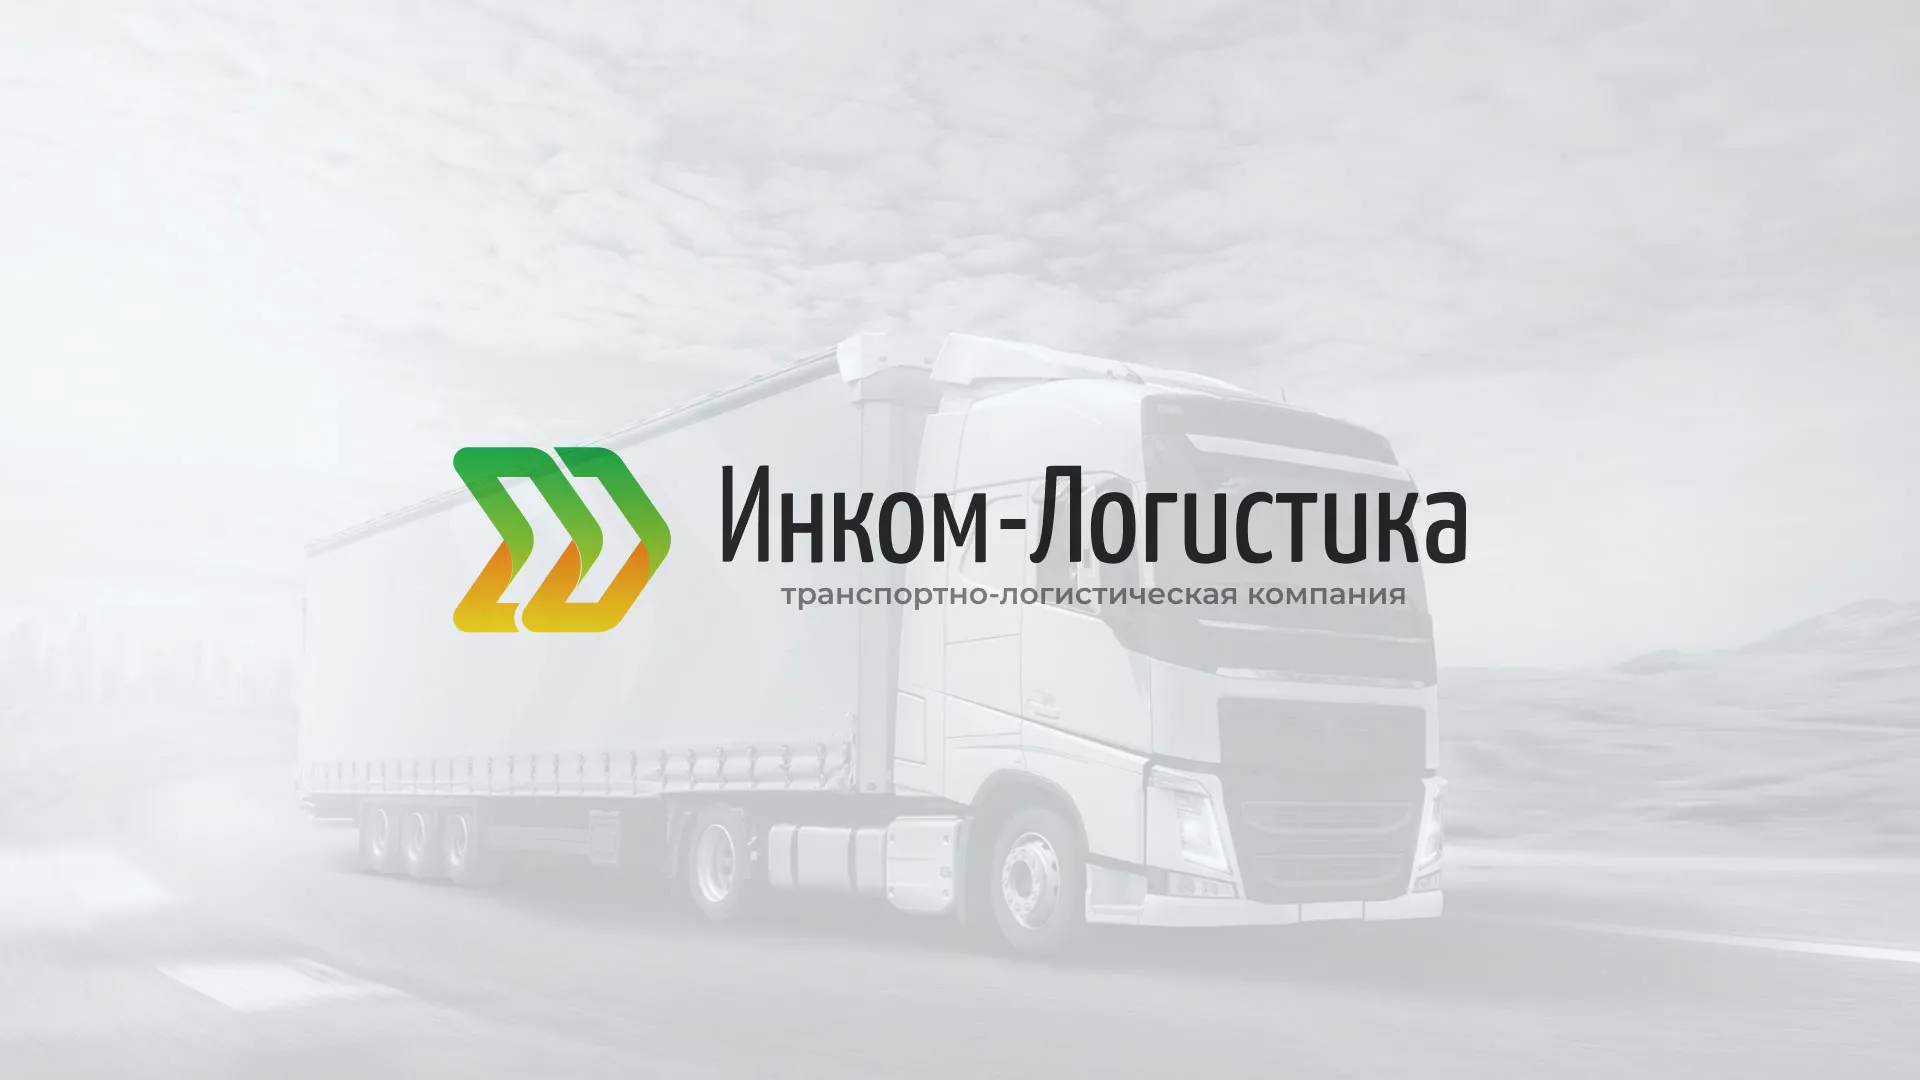 Разработка логотипа и сайта компании «Инком-Логистика» в Константиновске